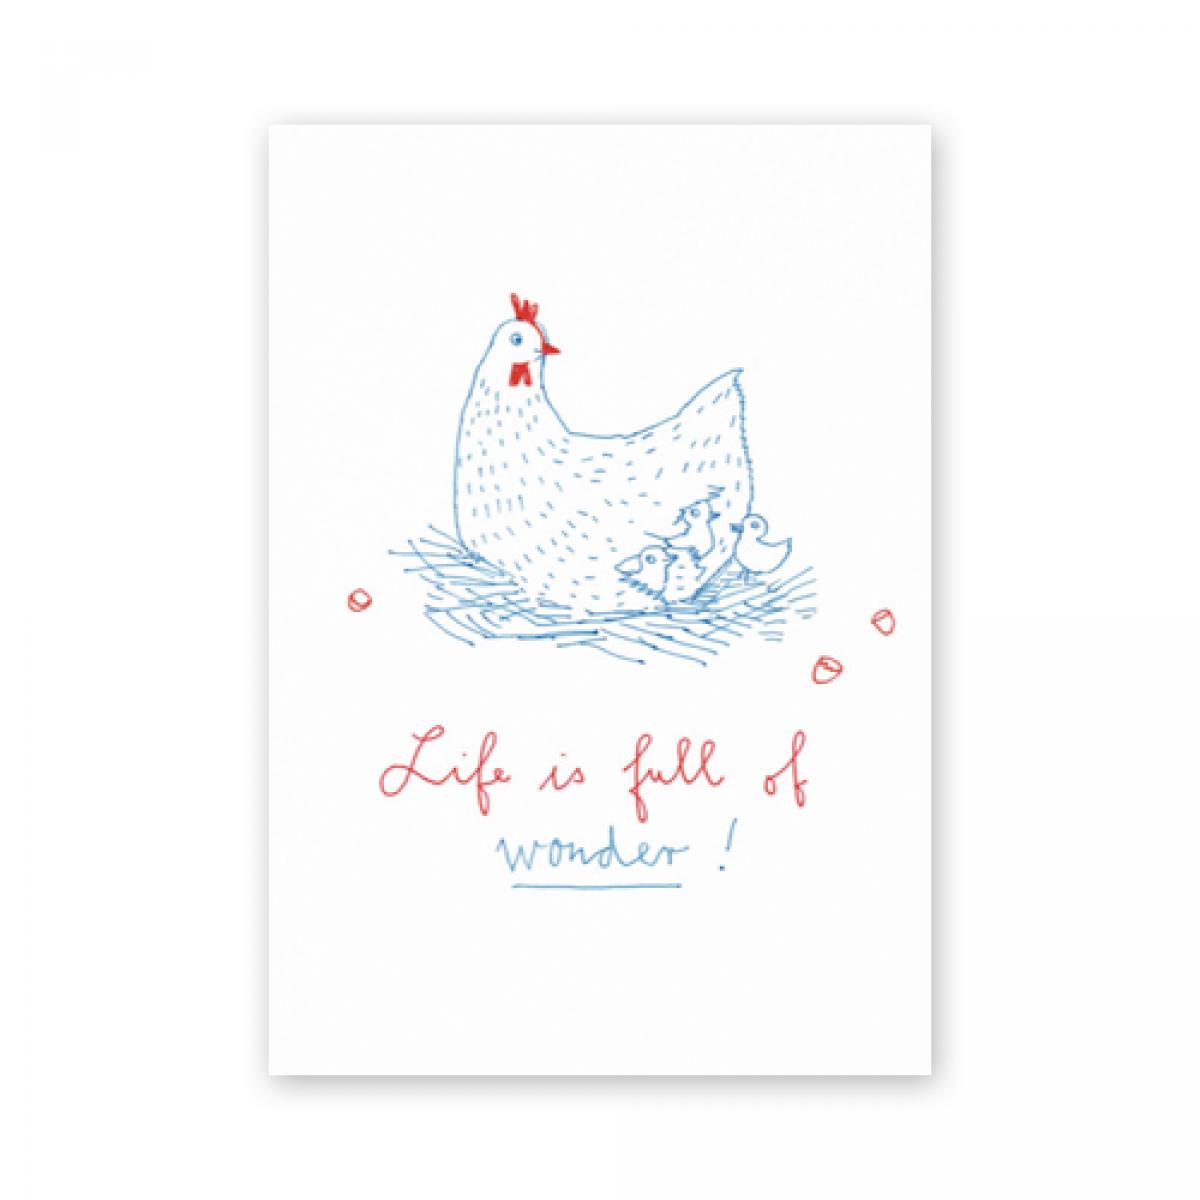 Postkarte: Life is full of wonder!